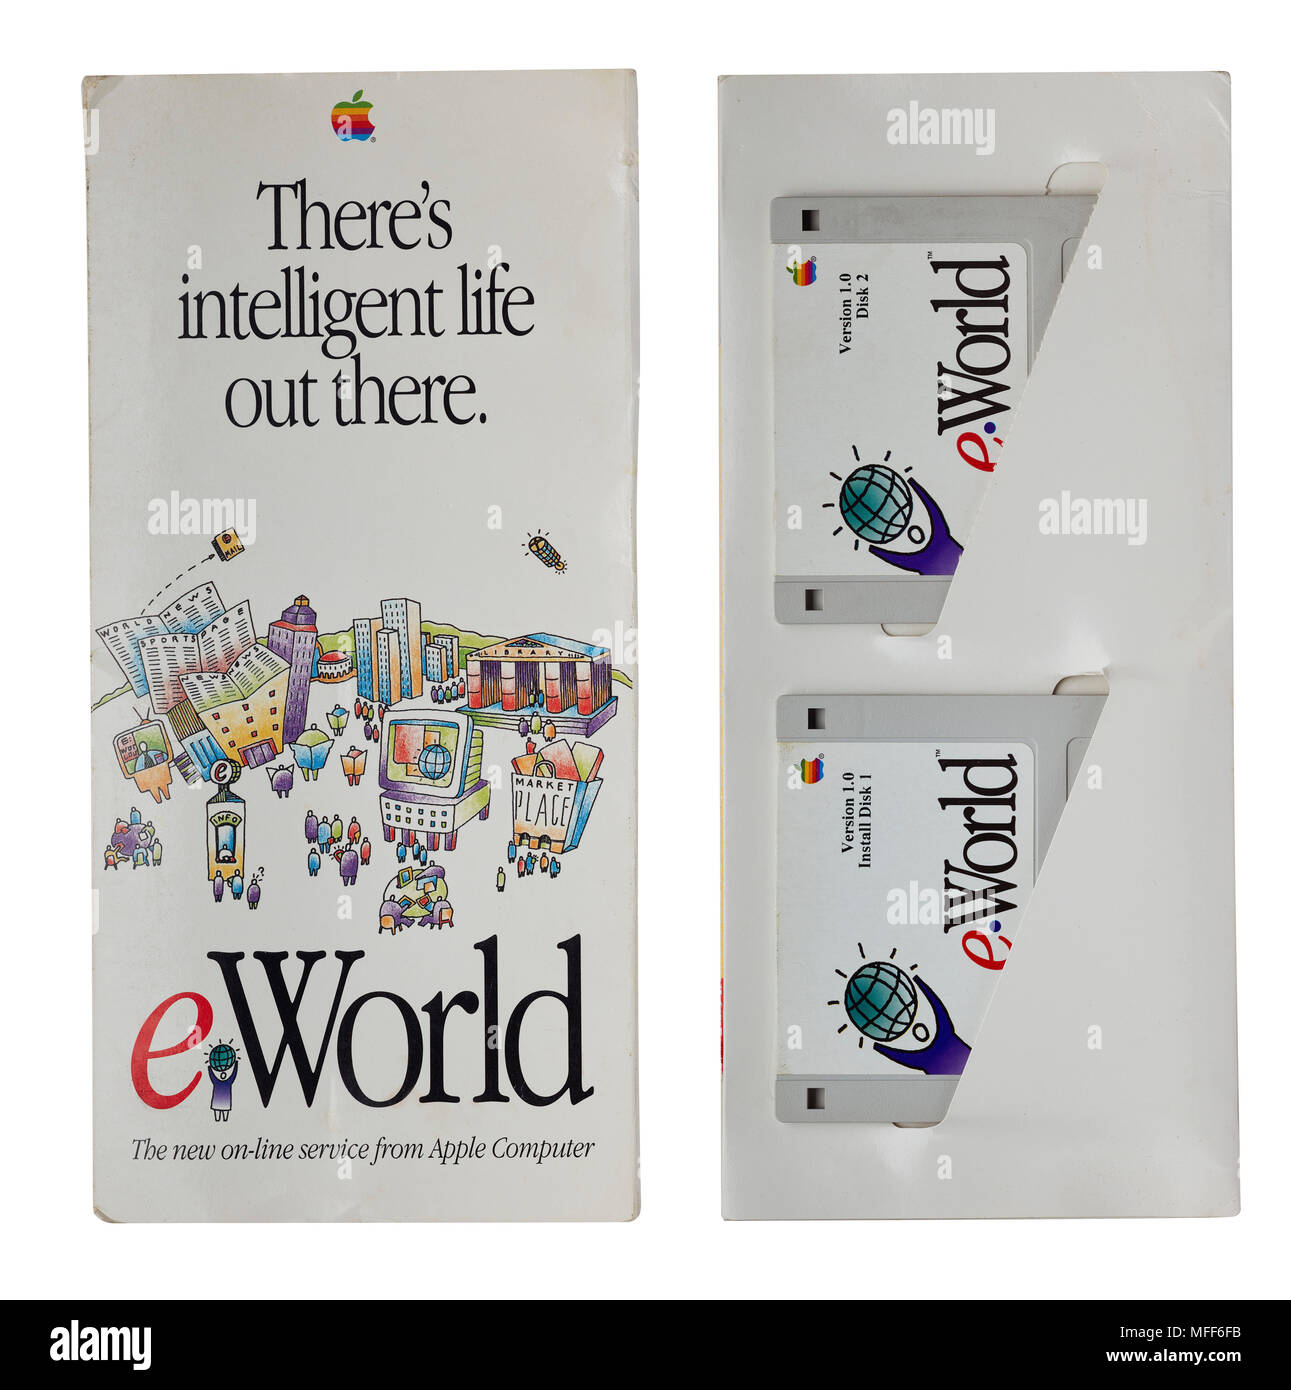 Ursprüngliche Abdeckung und innen Übersicht Installation Disketten von eWorld Software von Apple, die im Juni 1994 ins Leben gerufen Stockfoto